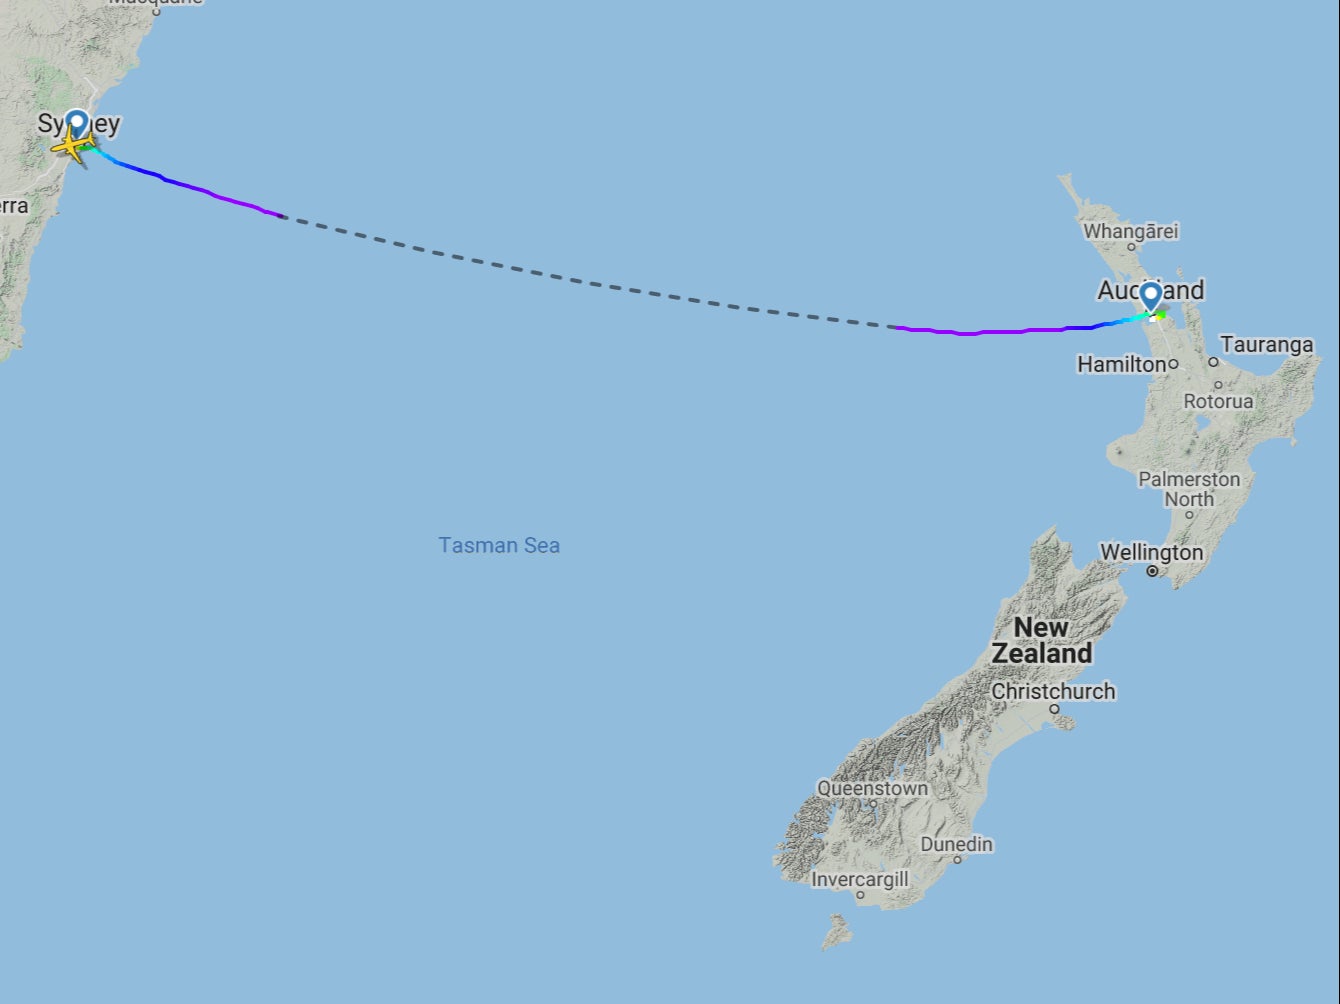 First flight: the trajectory of JetStar flight JQ201 from Sydney to Auckland